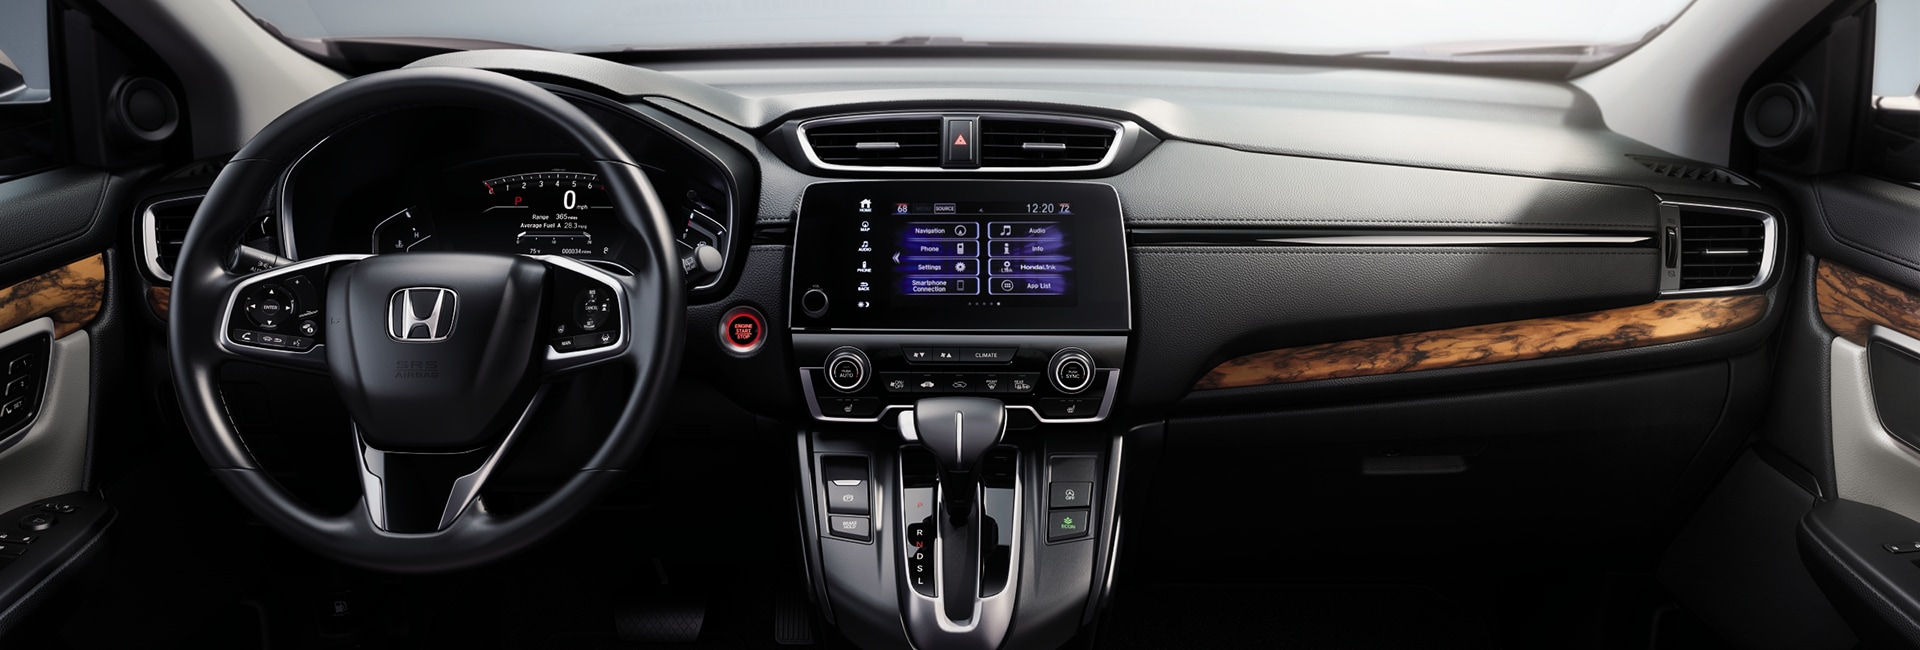 2020 Honda CR-V Interior Features